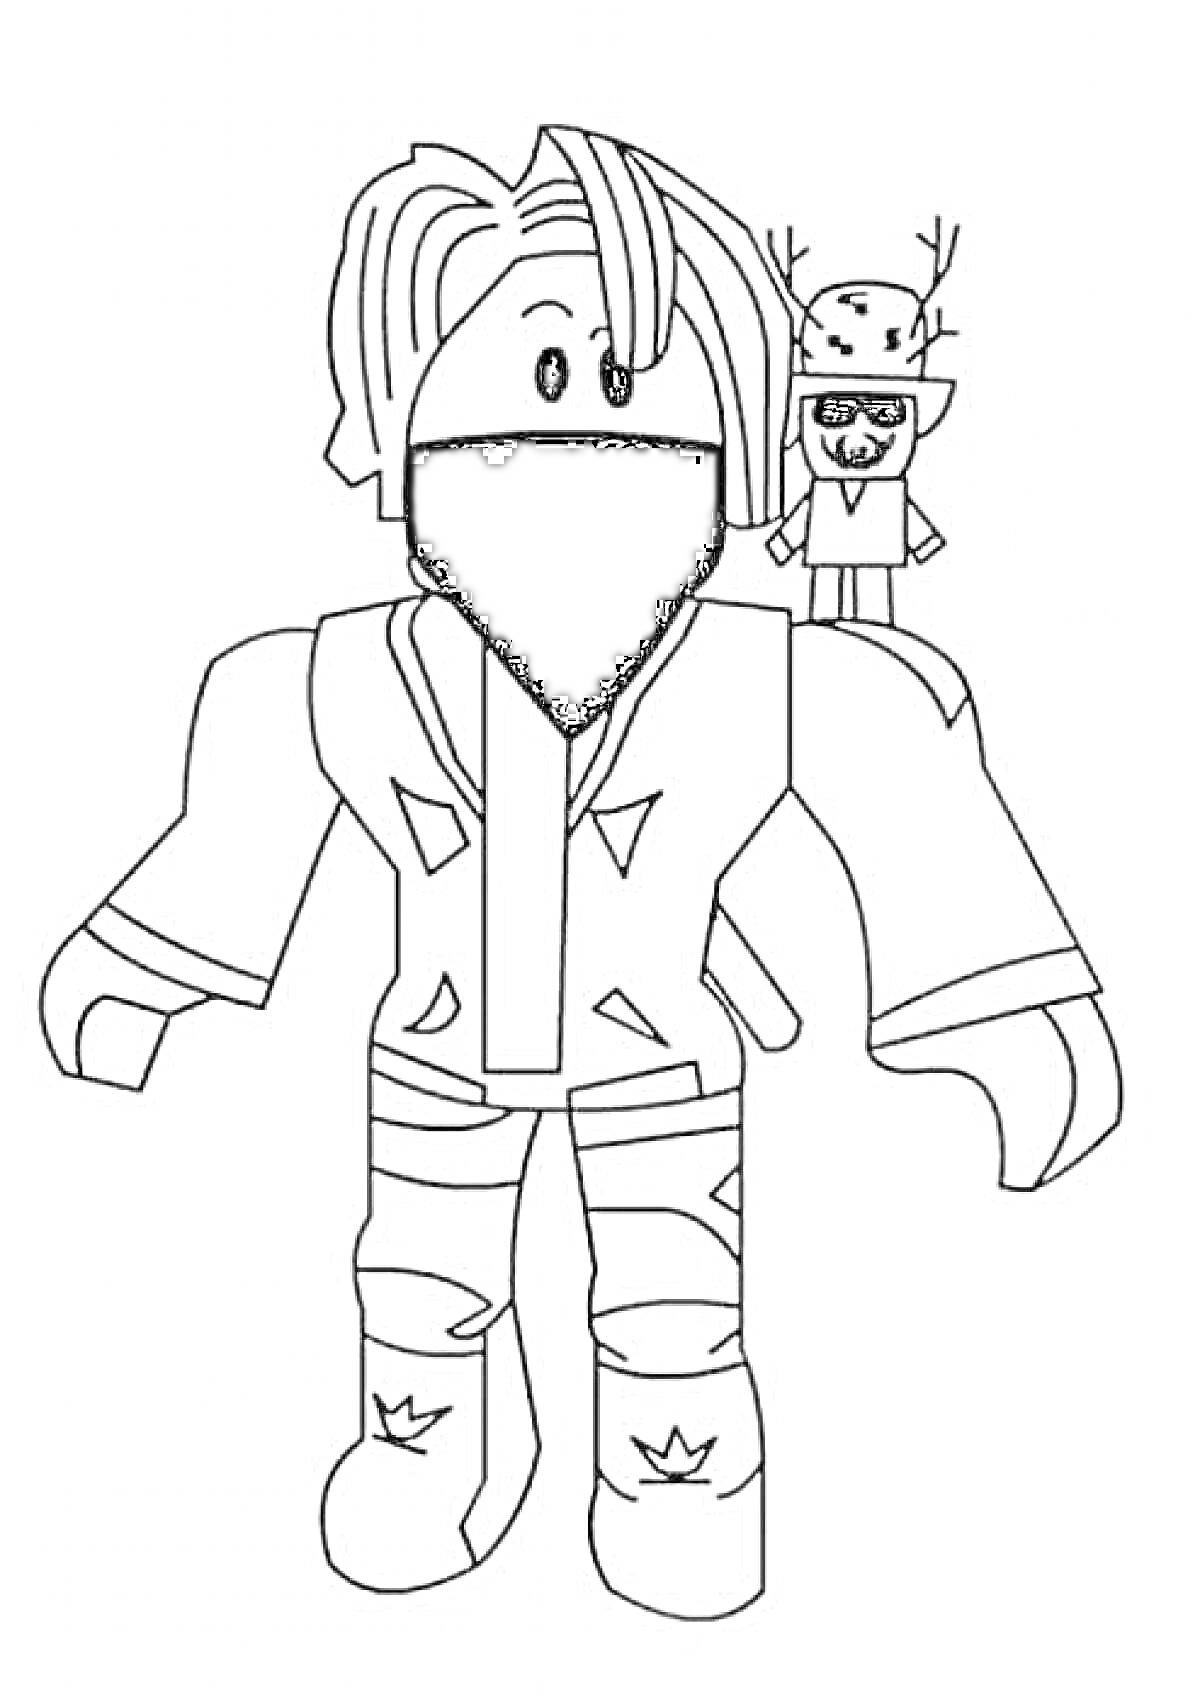 Персонаж Roblox с маской на лице и маленькой игрушкой на плече